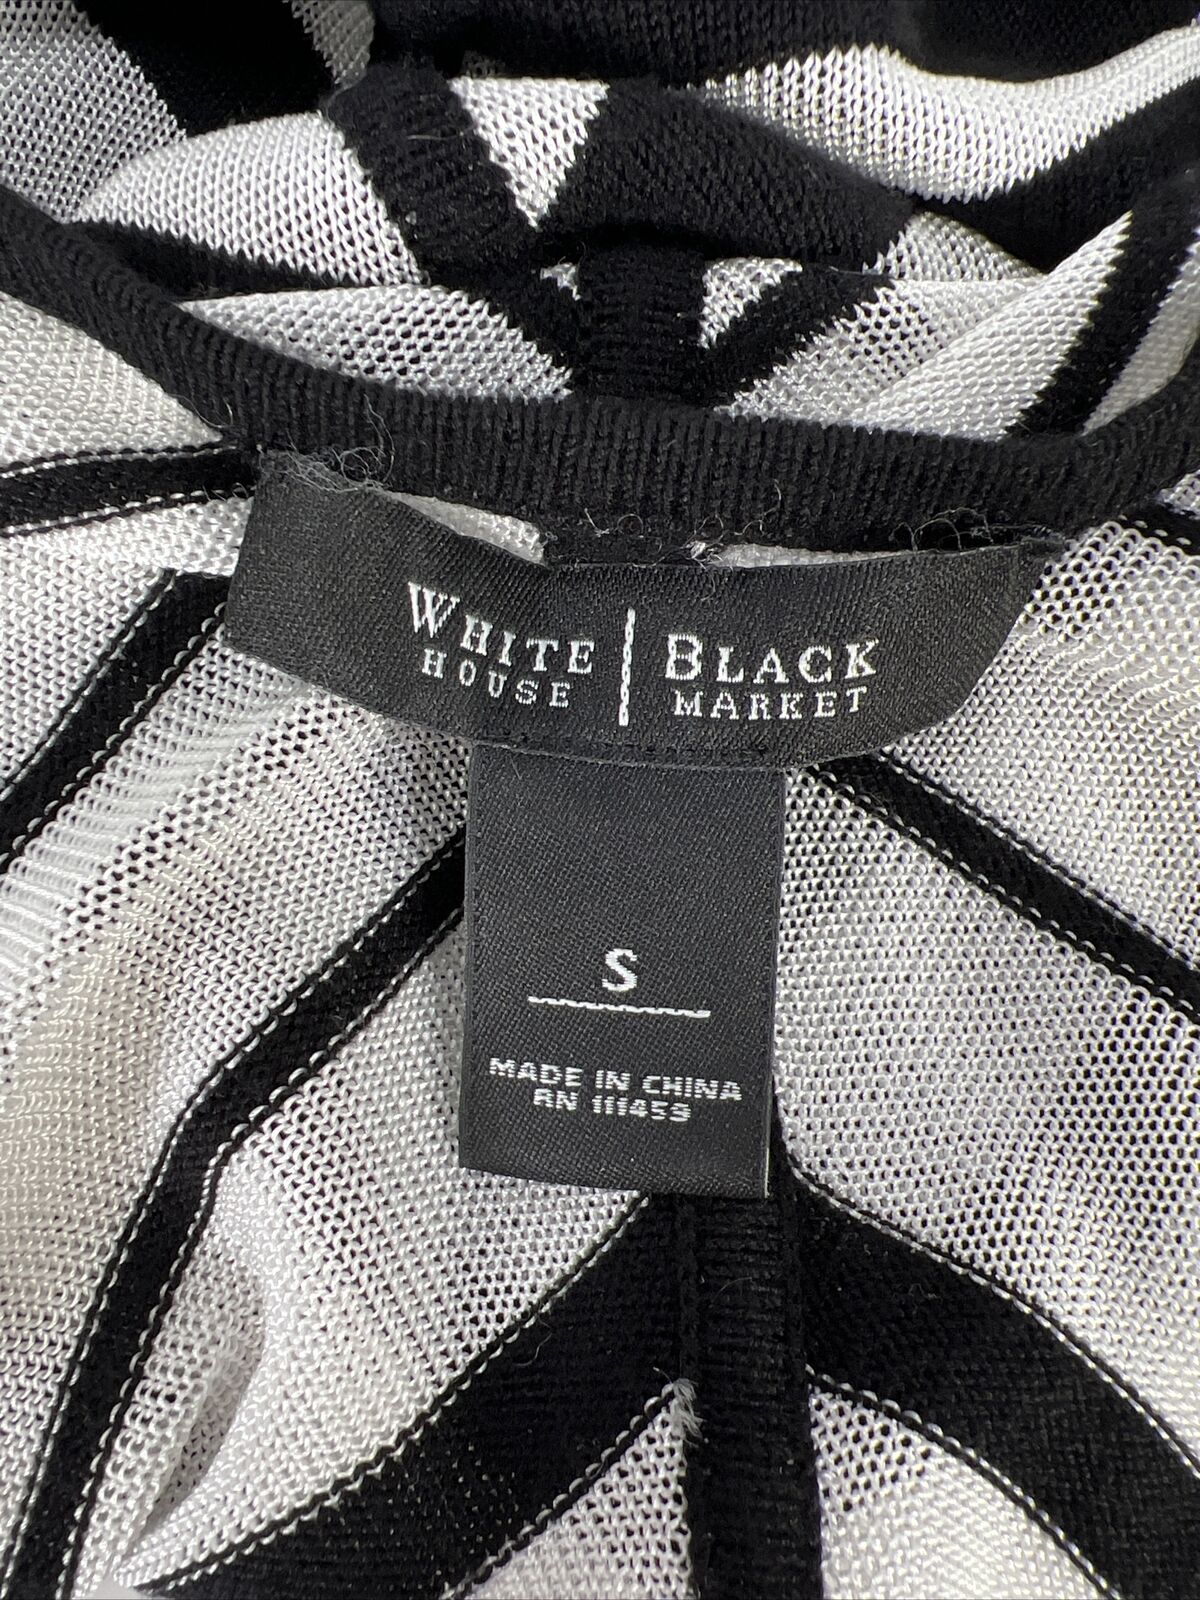 White House Black Market Womens Black/White Sheer Long Sleeve Cardigan -S